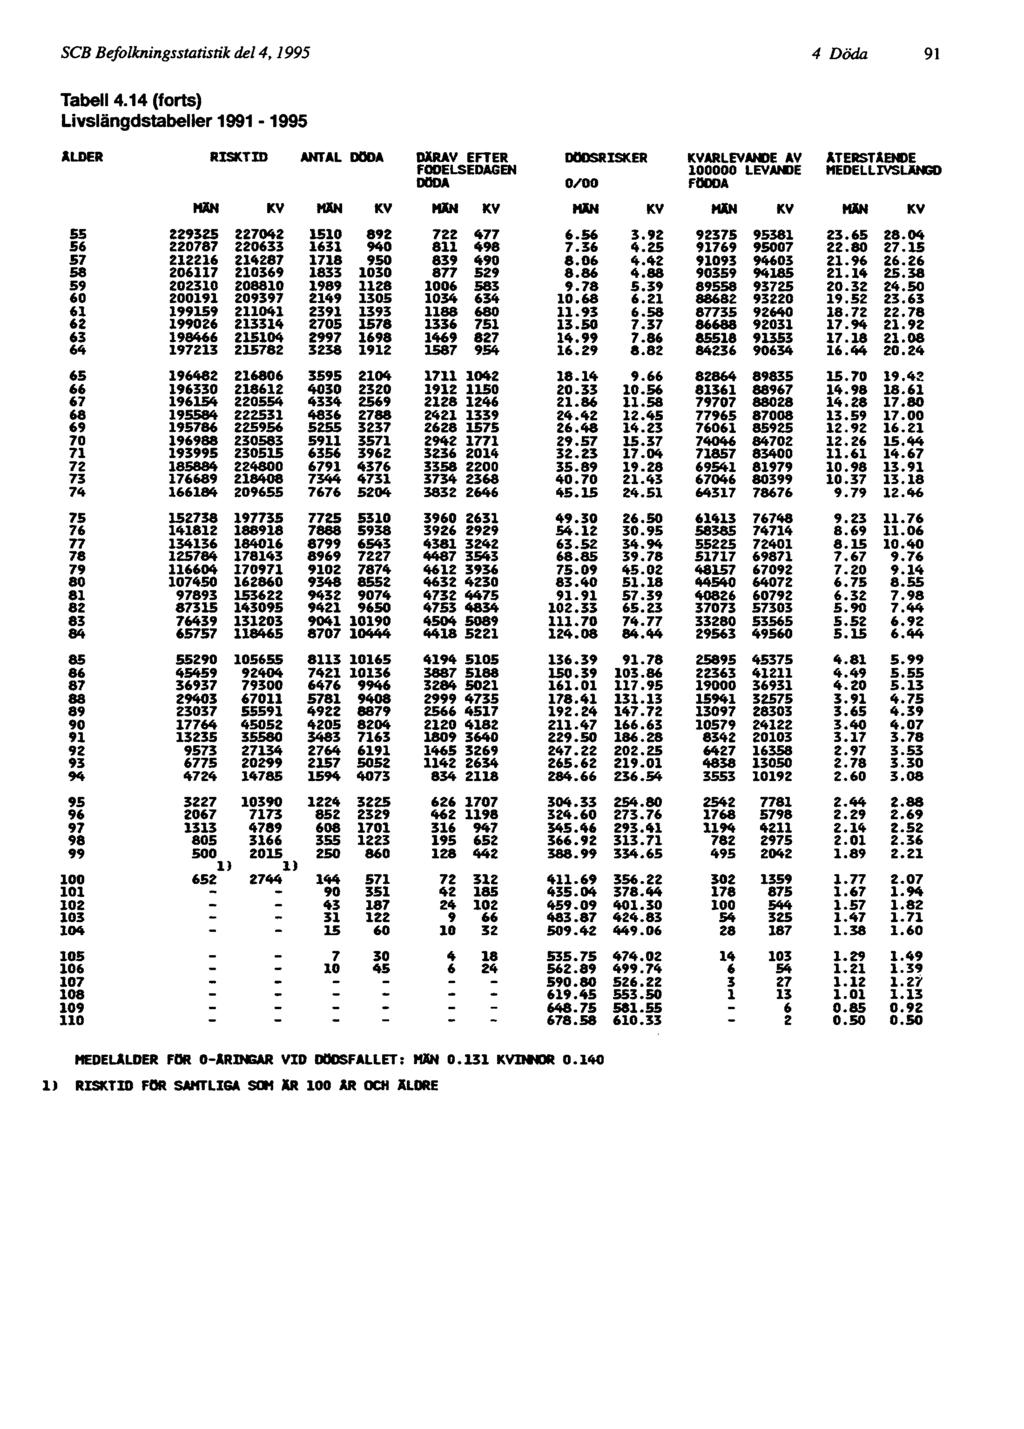 SCB Befolkningsstatistik del 4, 1995 4 Döda 91 MEDELÅLDER FOR O-ARINGAR VID